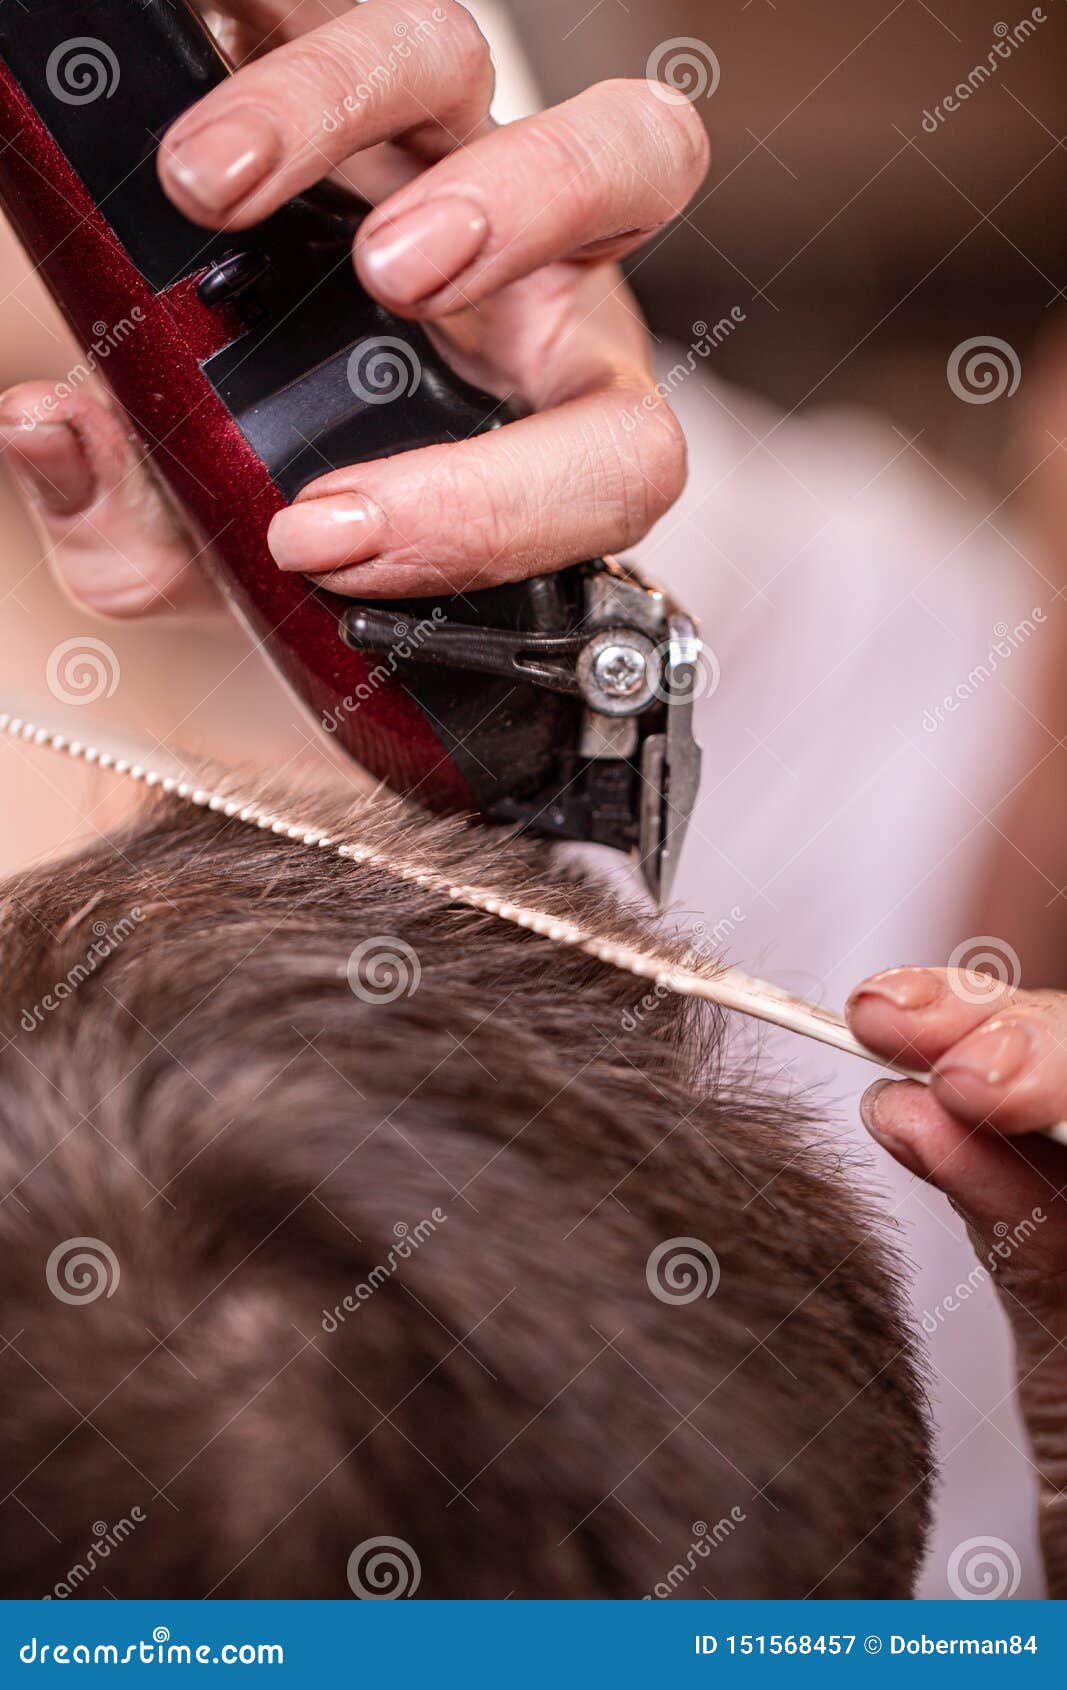 Haircut Closeup. Hands Holding A Hair Clipper. Barber ...
